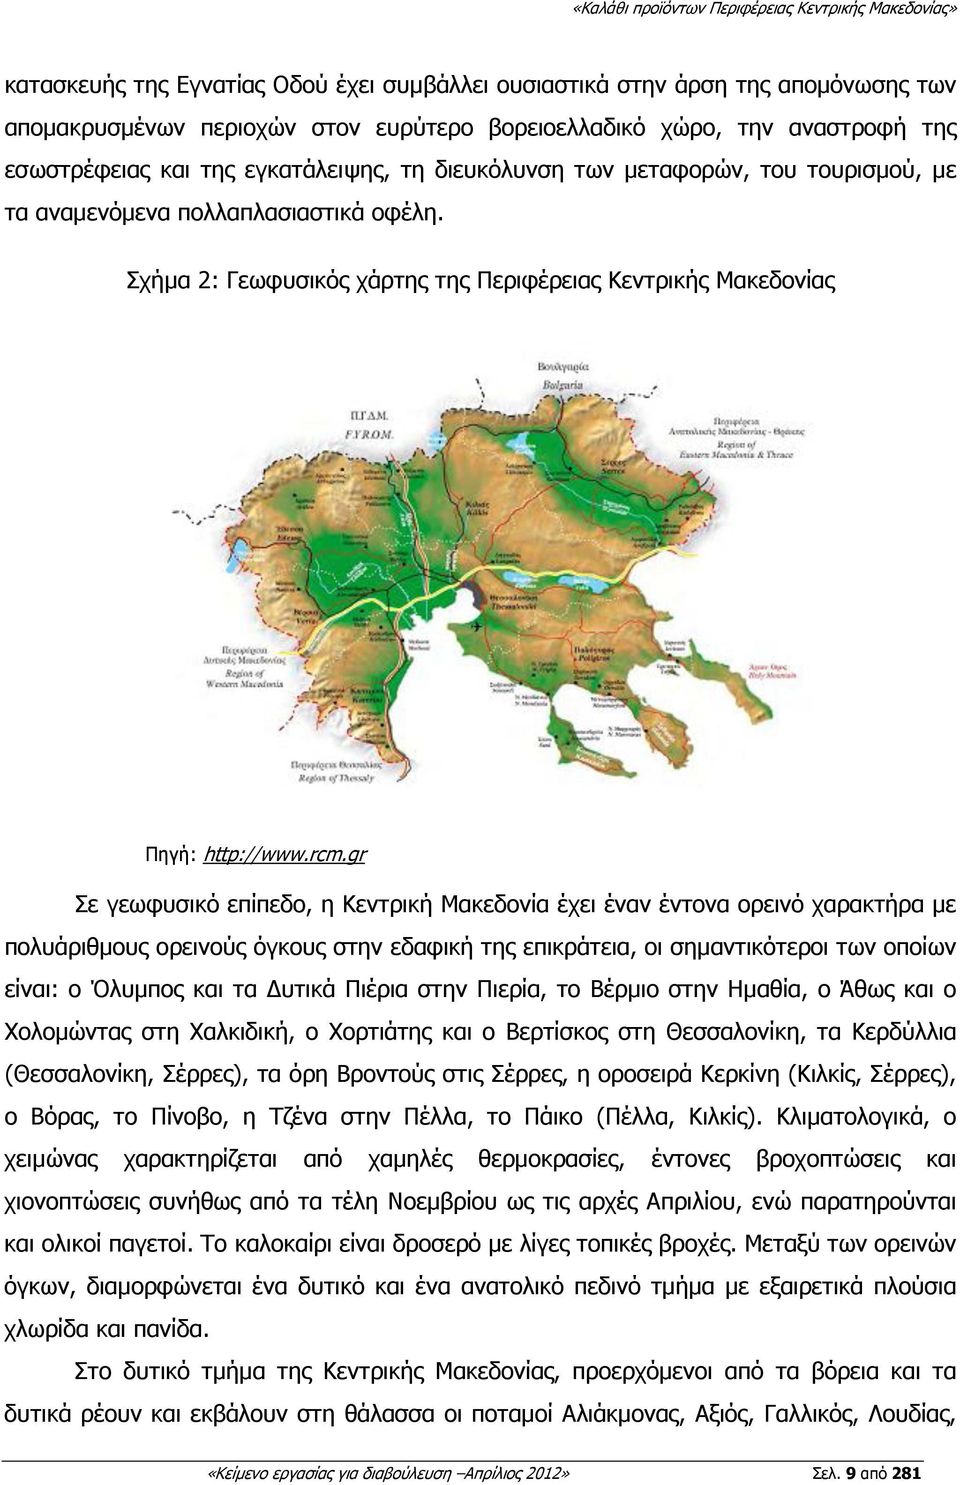 gr Σε γεωφυσικό επίπεδο, η Κεντρική Μακεδονία έχει έναν έντονα ορεινό χαρακτήρα µε πολυάριθµους ορεινούς όγκους στην εδαφική της επικράτεια, οι σηµαντικότεροι των οποίων είναι: ο Όλυµπος και τα υτικά